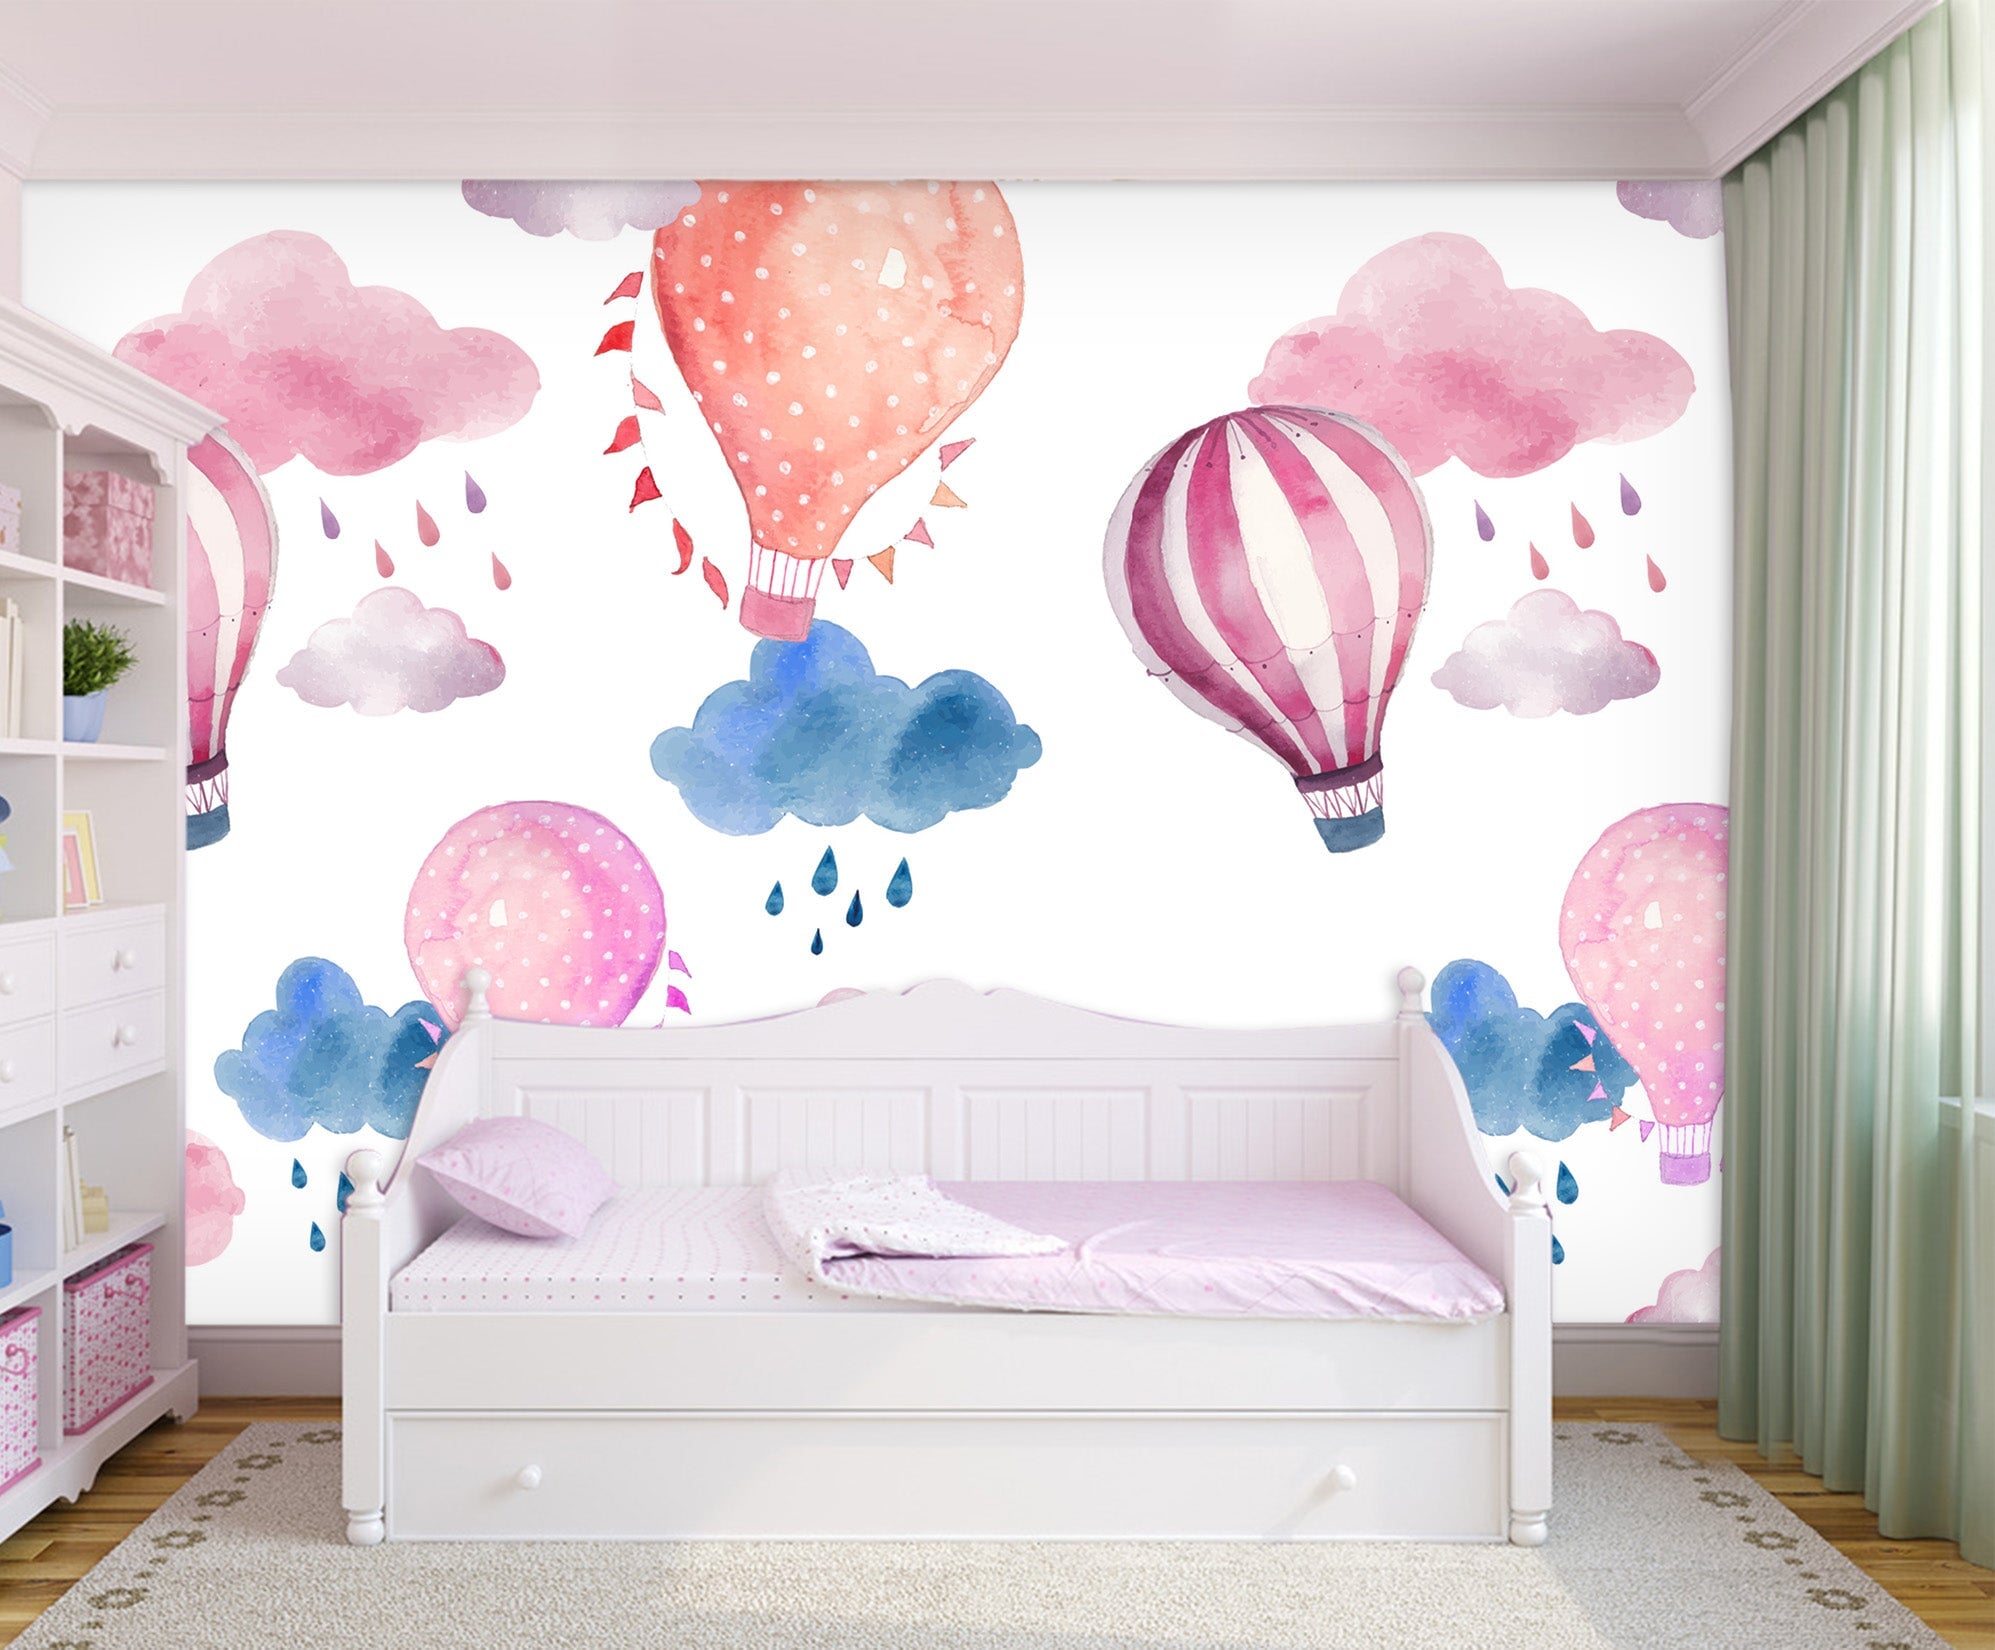 3D Pink Hot Air Balloon 031 Wall Murals Wallpaper AJ Wallpaper 2 